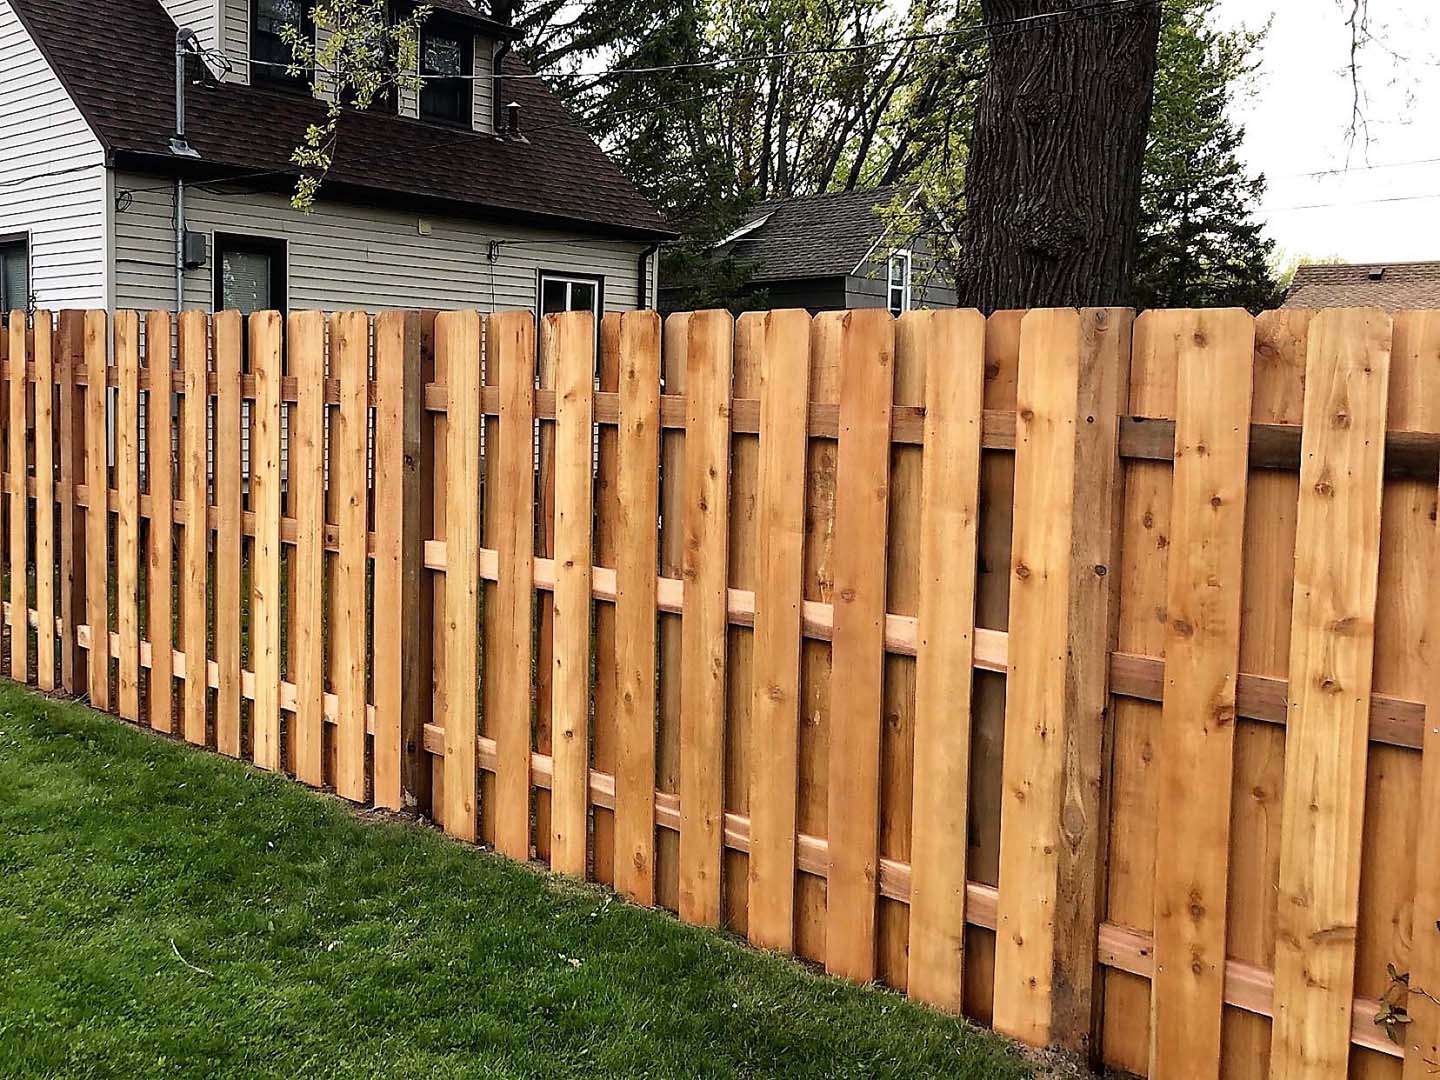 Blaine Shadowbox style wood fence